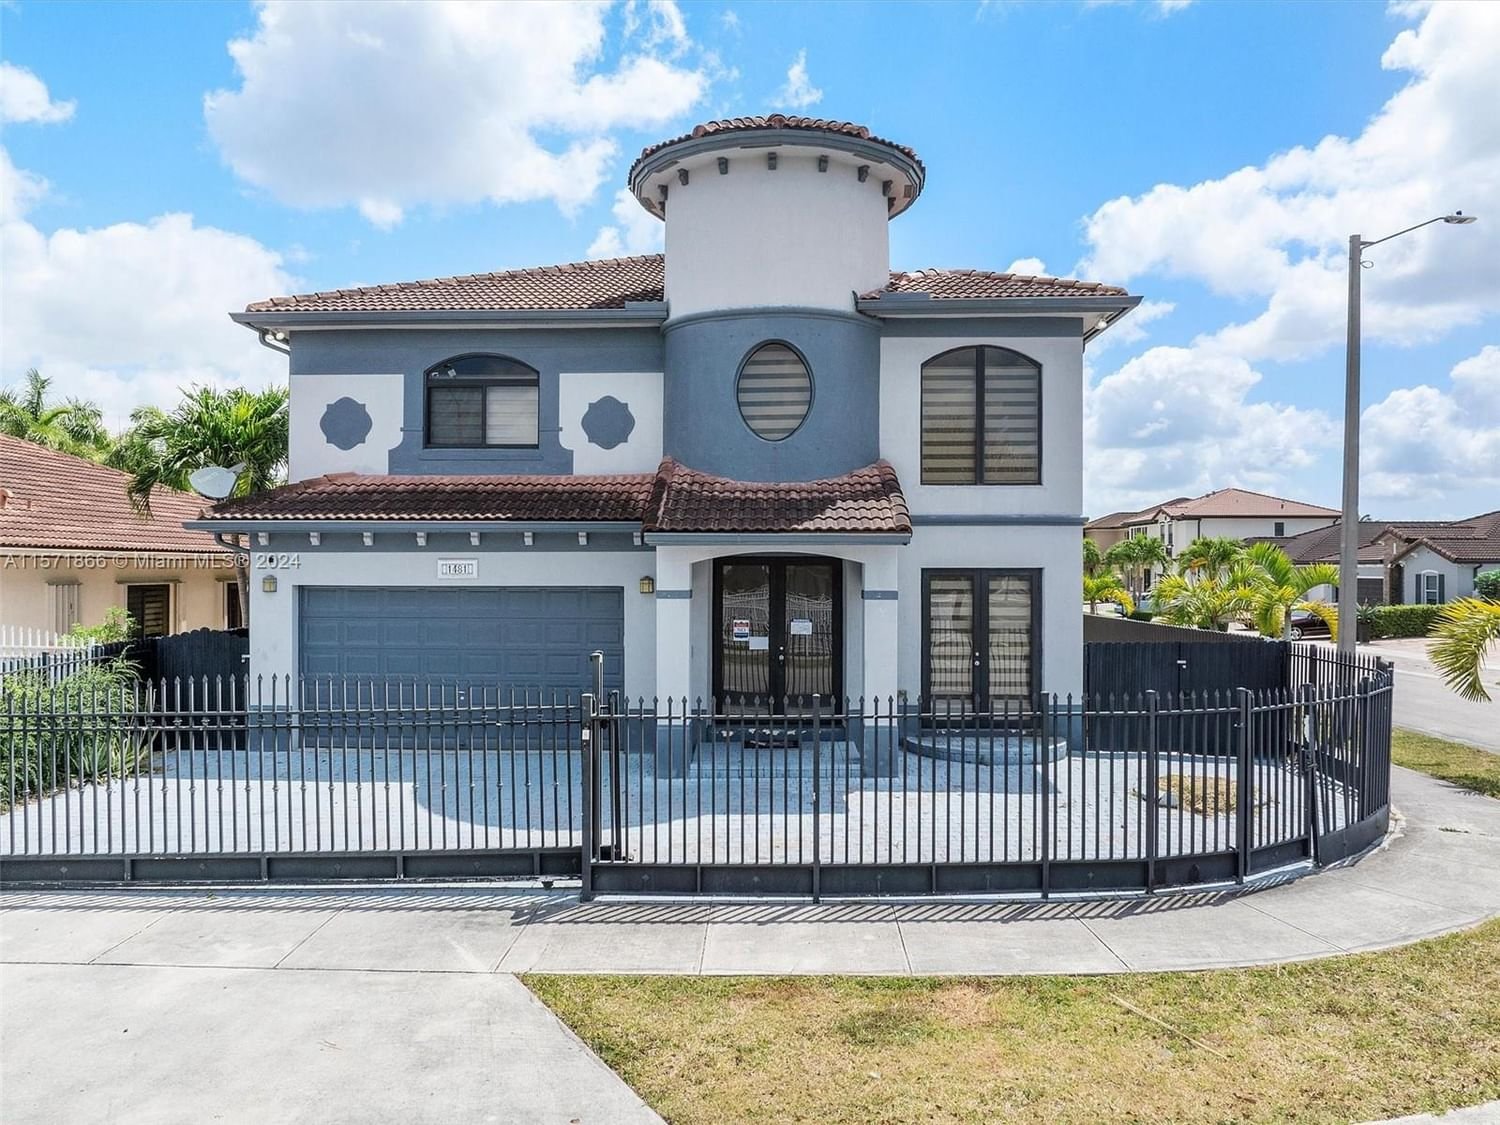 Real estate property located at 1481 145th Ave, Miami-Dade County, SION ESTATES, Miami, FL